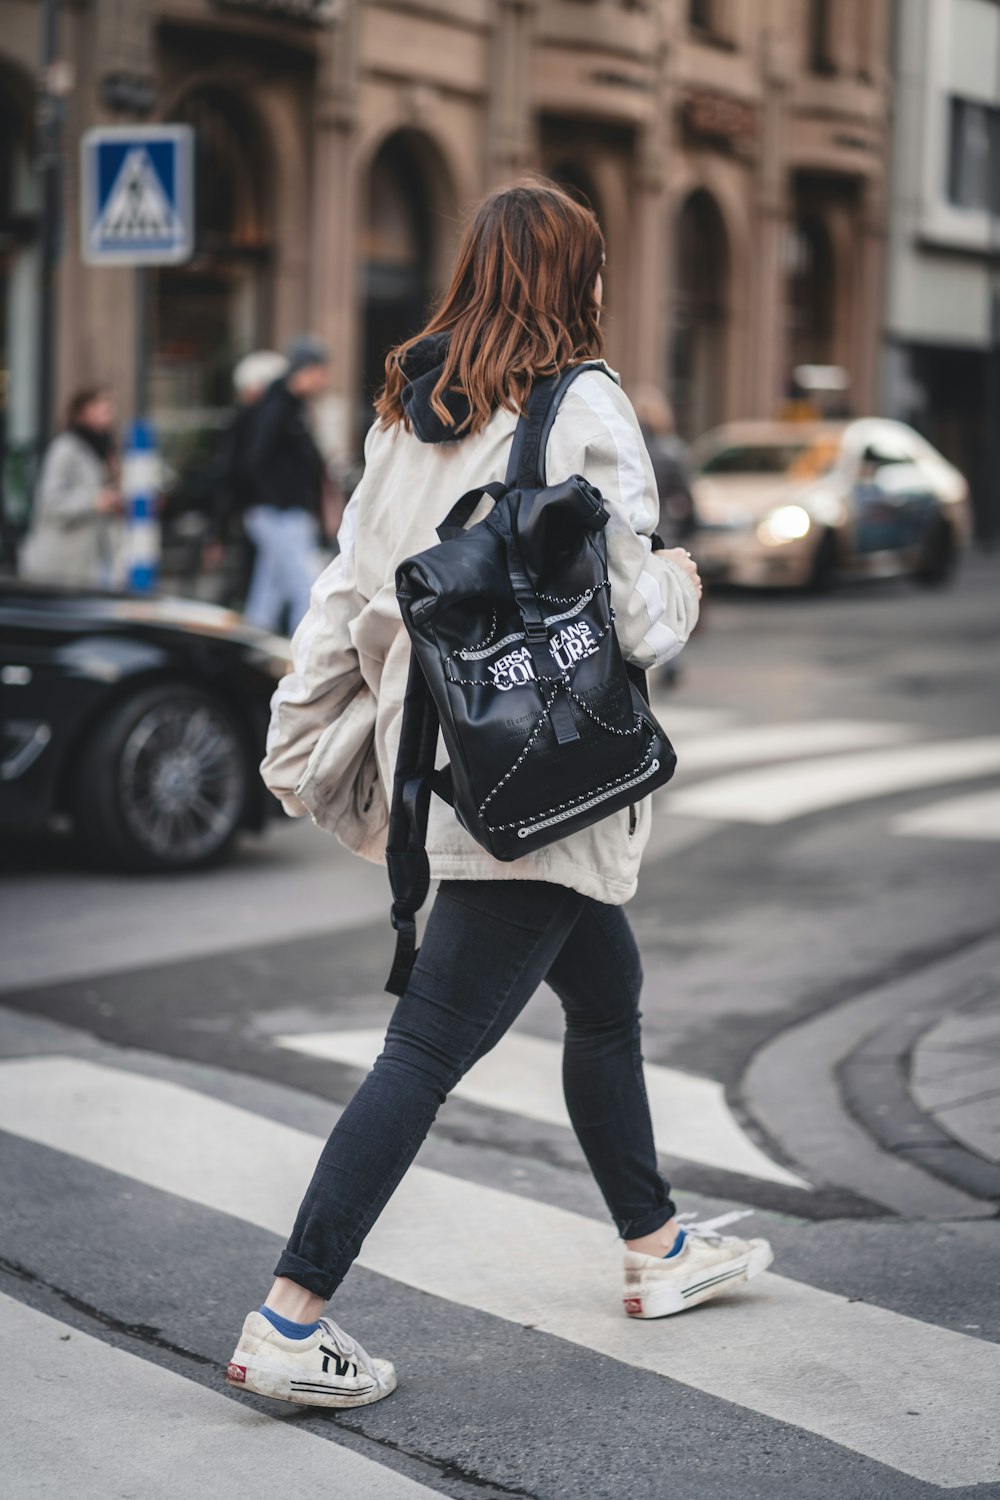 mulher em calças pretas e jaqueta branca andando na calçada durante o dia